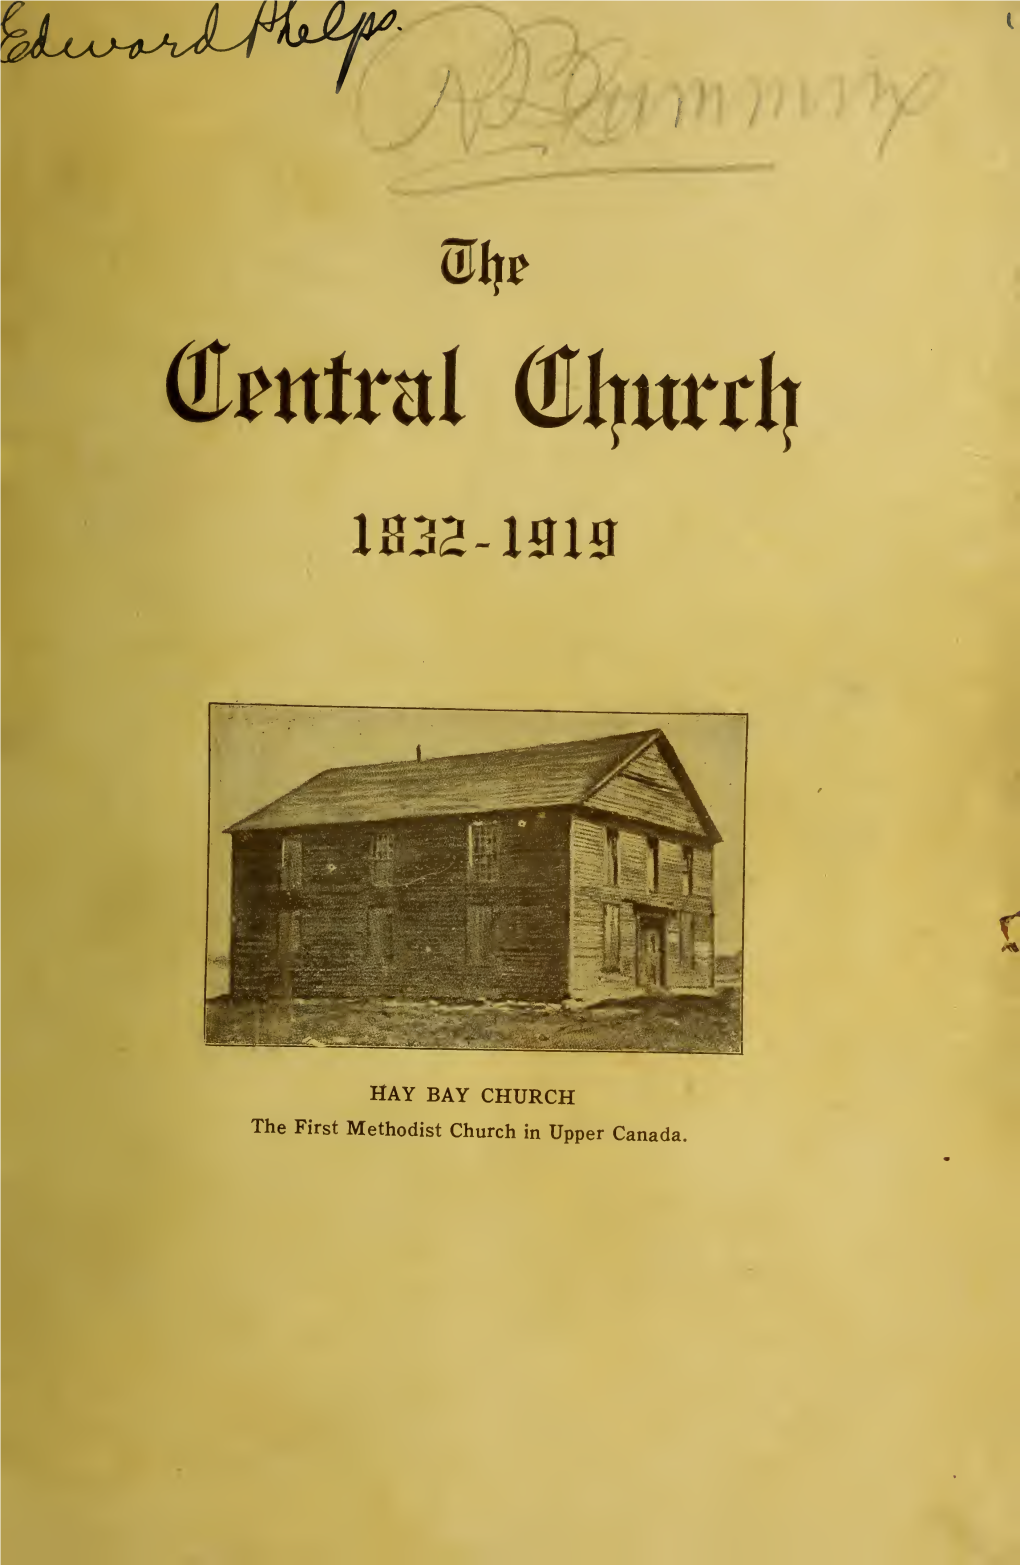 Central Methodist Church, Sarnia, Ontario